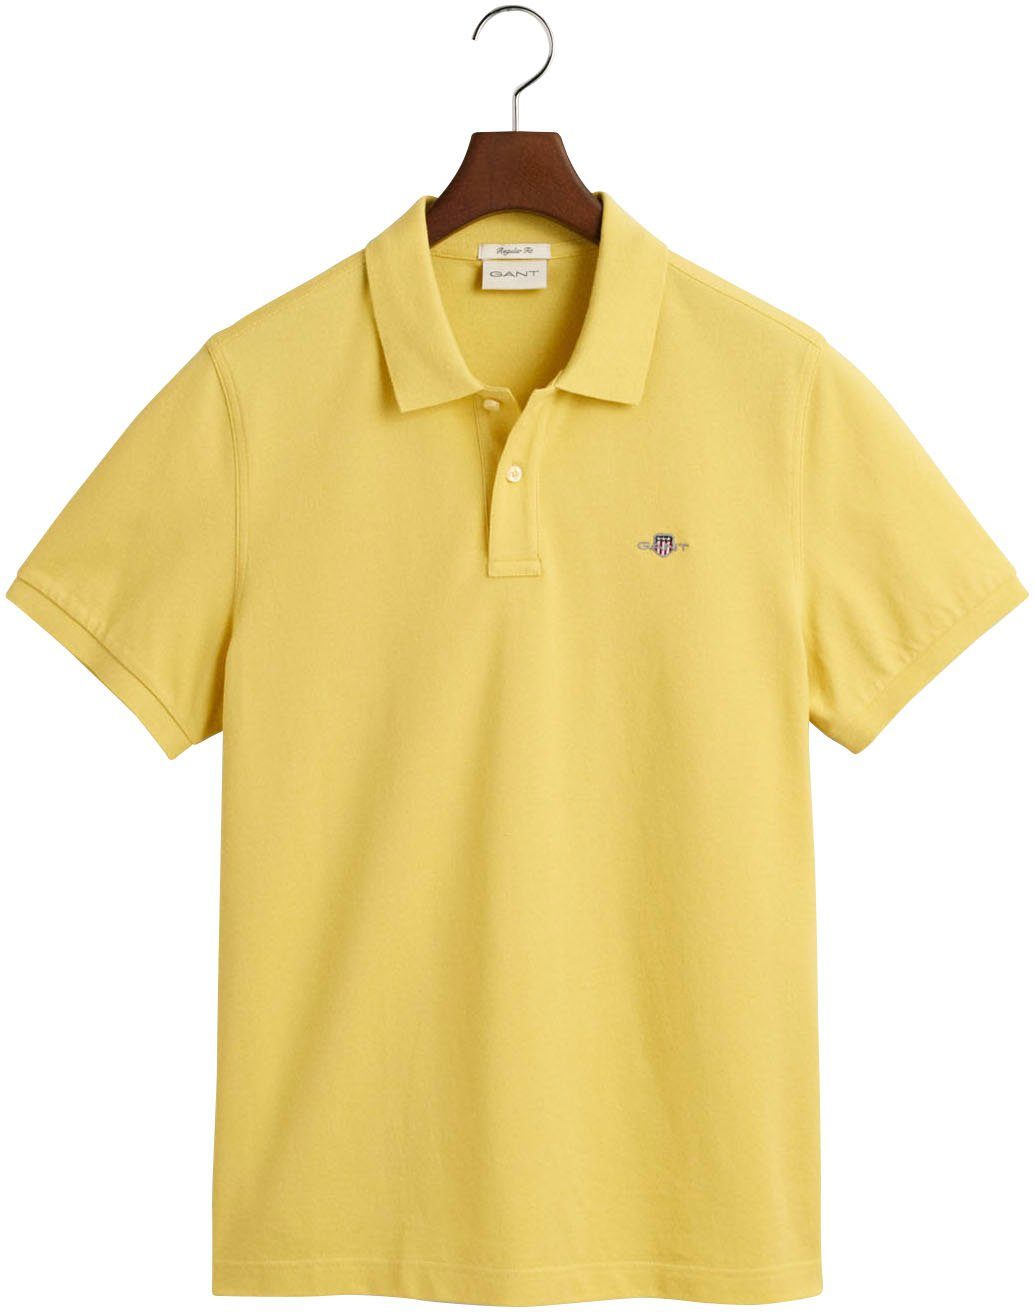 Gant Poloshirt Brust POLO PIQUE Logostickerei parchment SHIELD yellow auf REG SS der mit